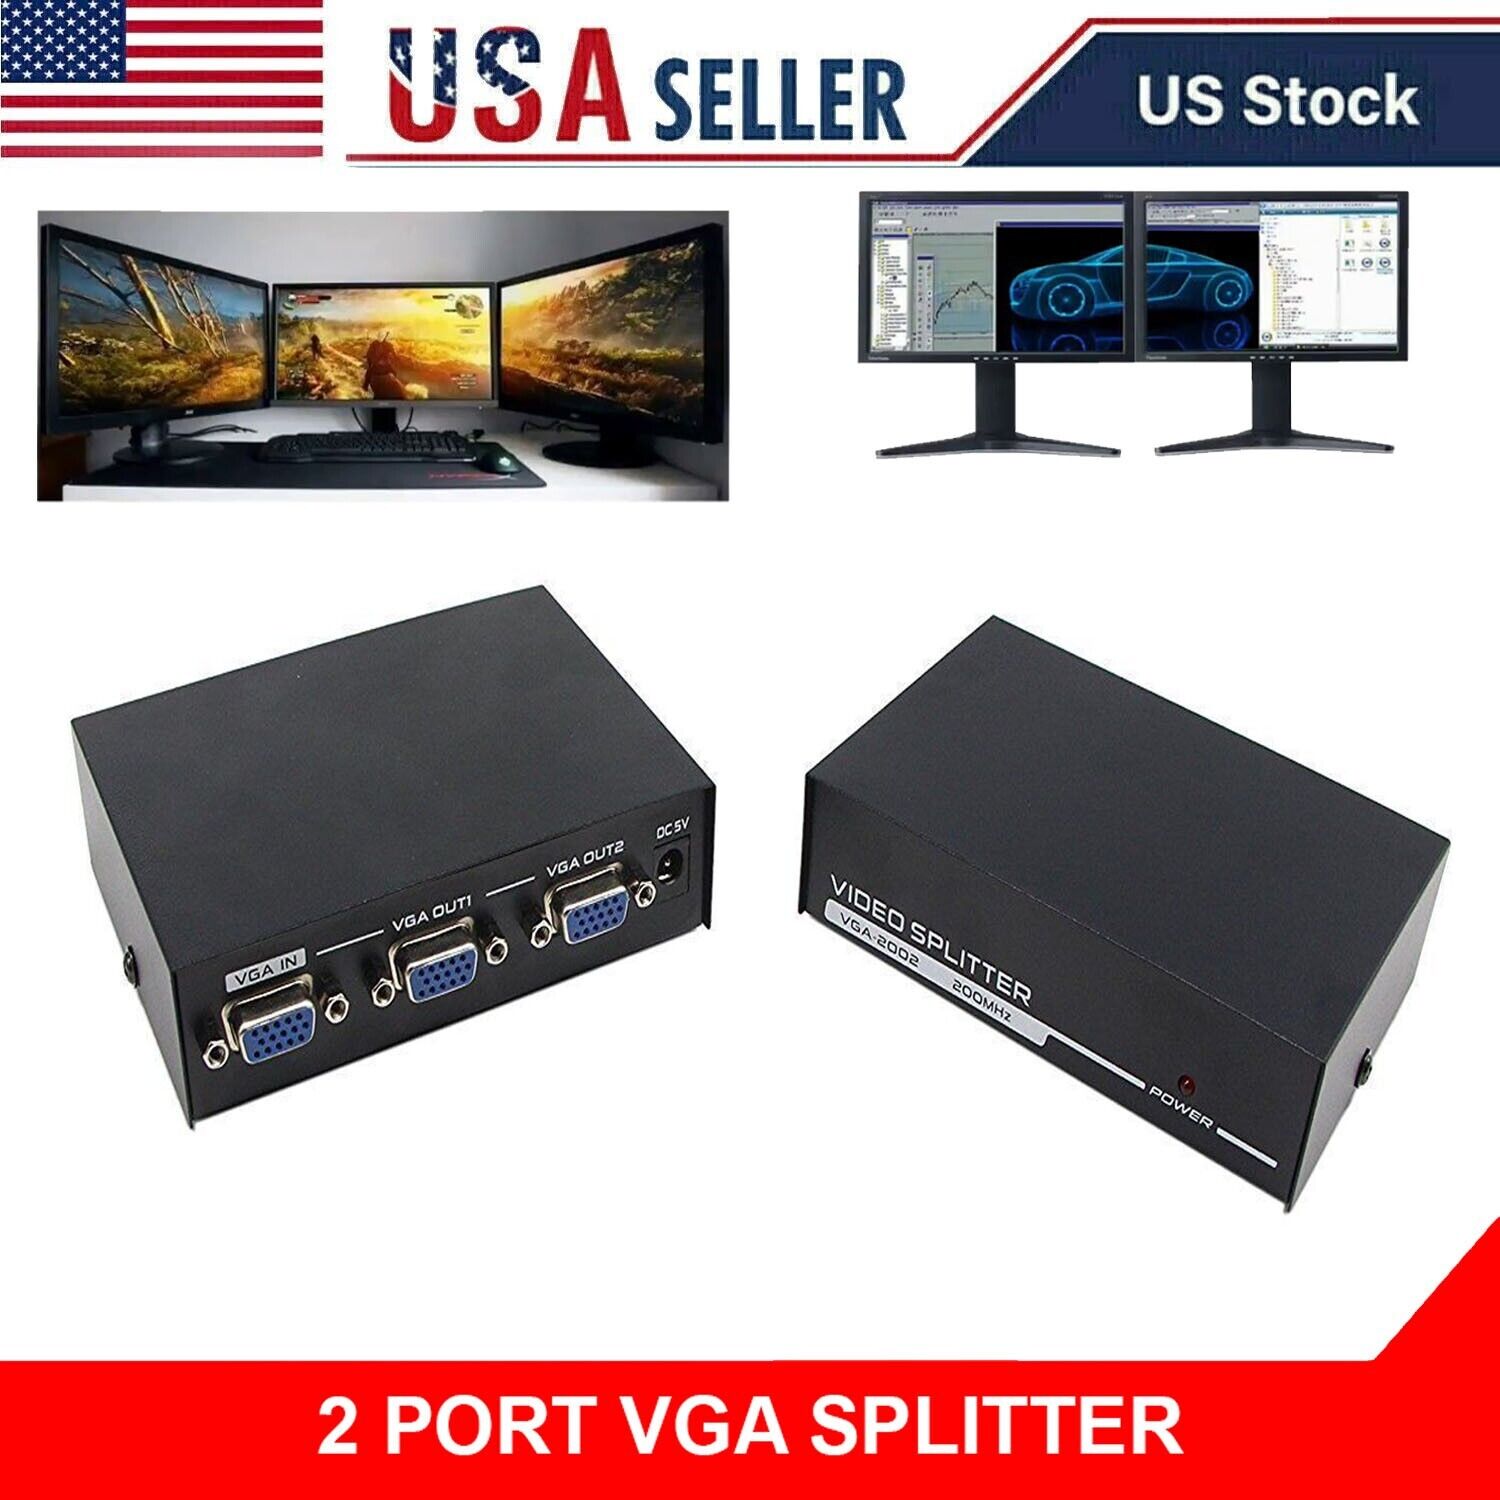 2-Ports VGA Splitter (200MHz) for 2 PC to share 1 system High Video Vga Splitter